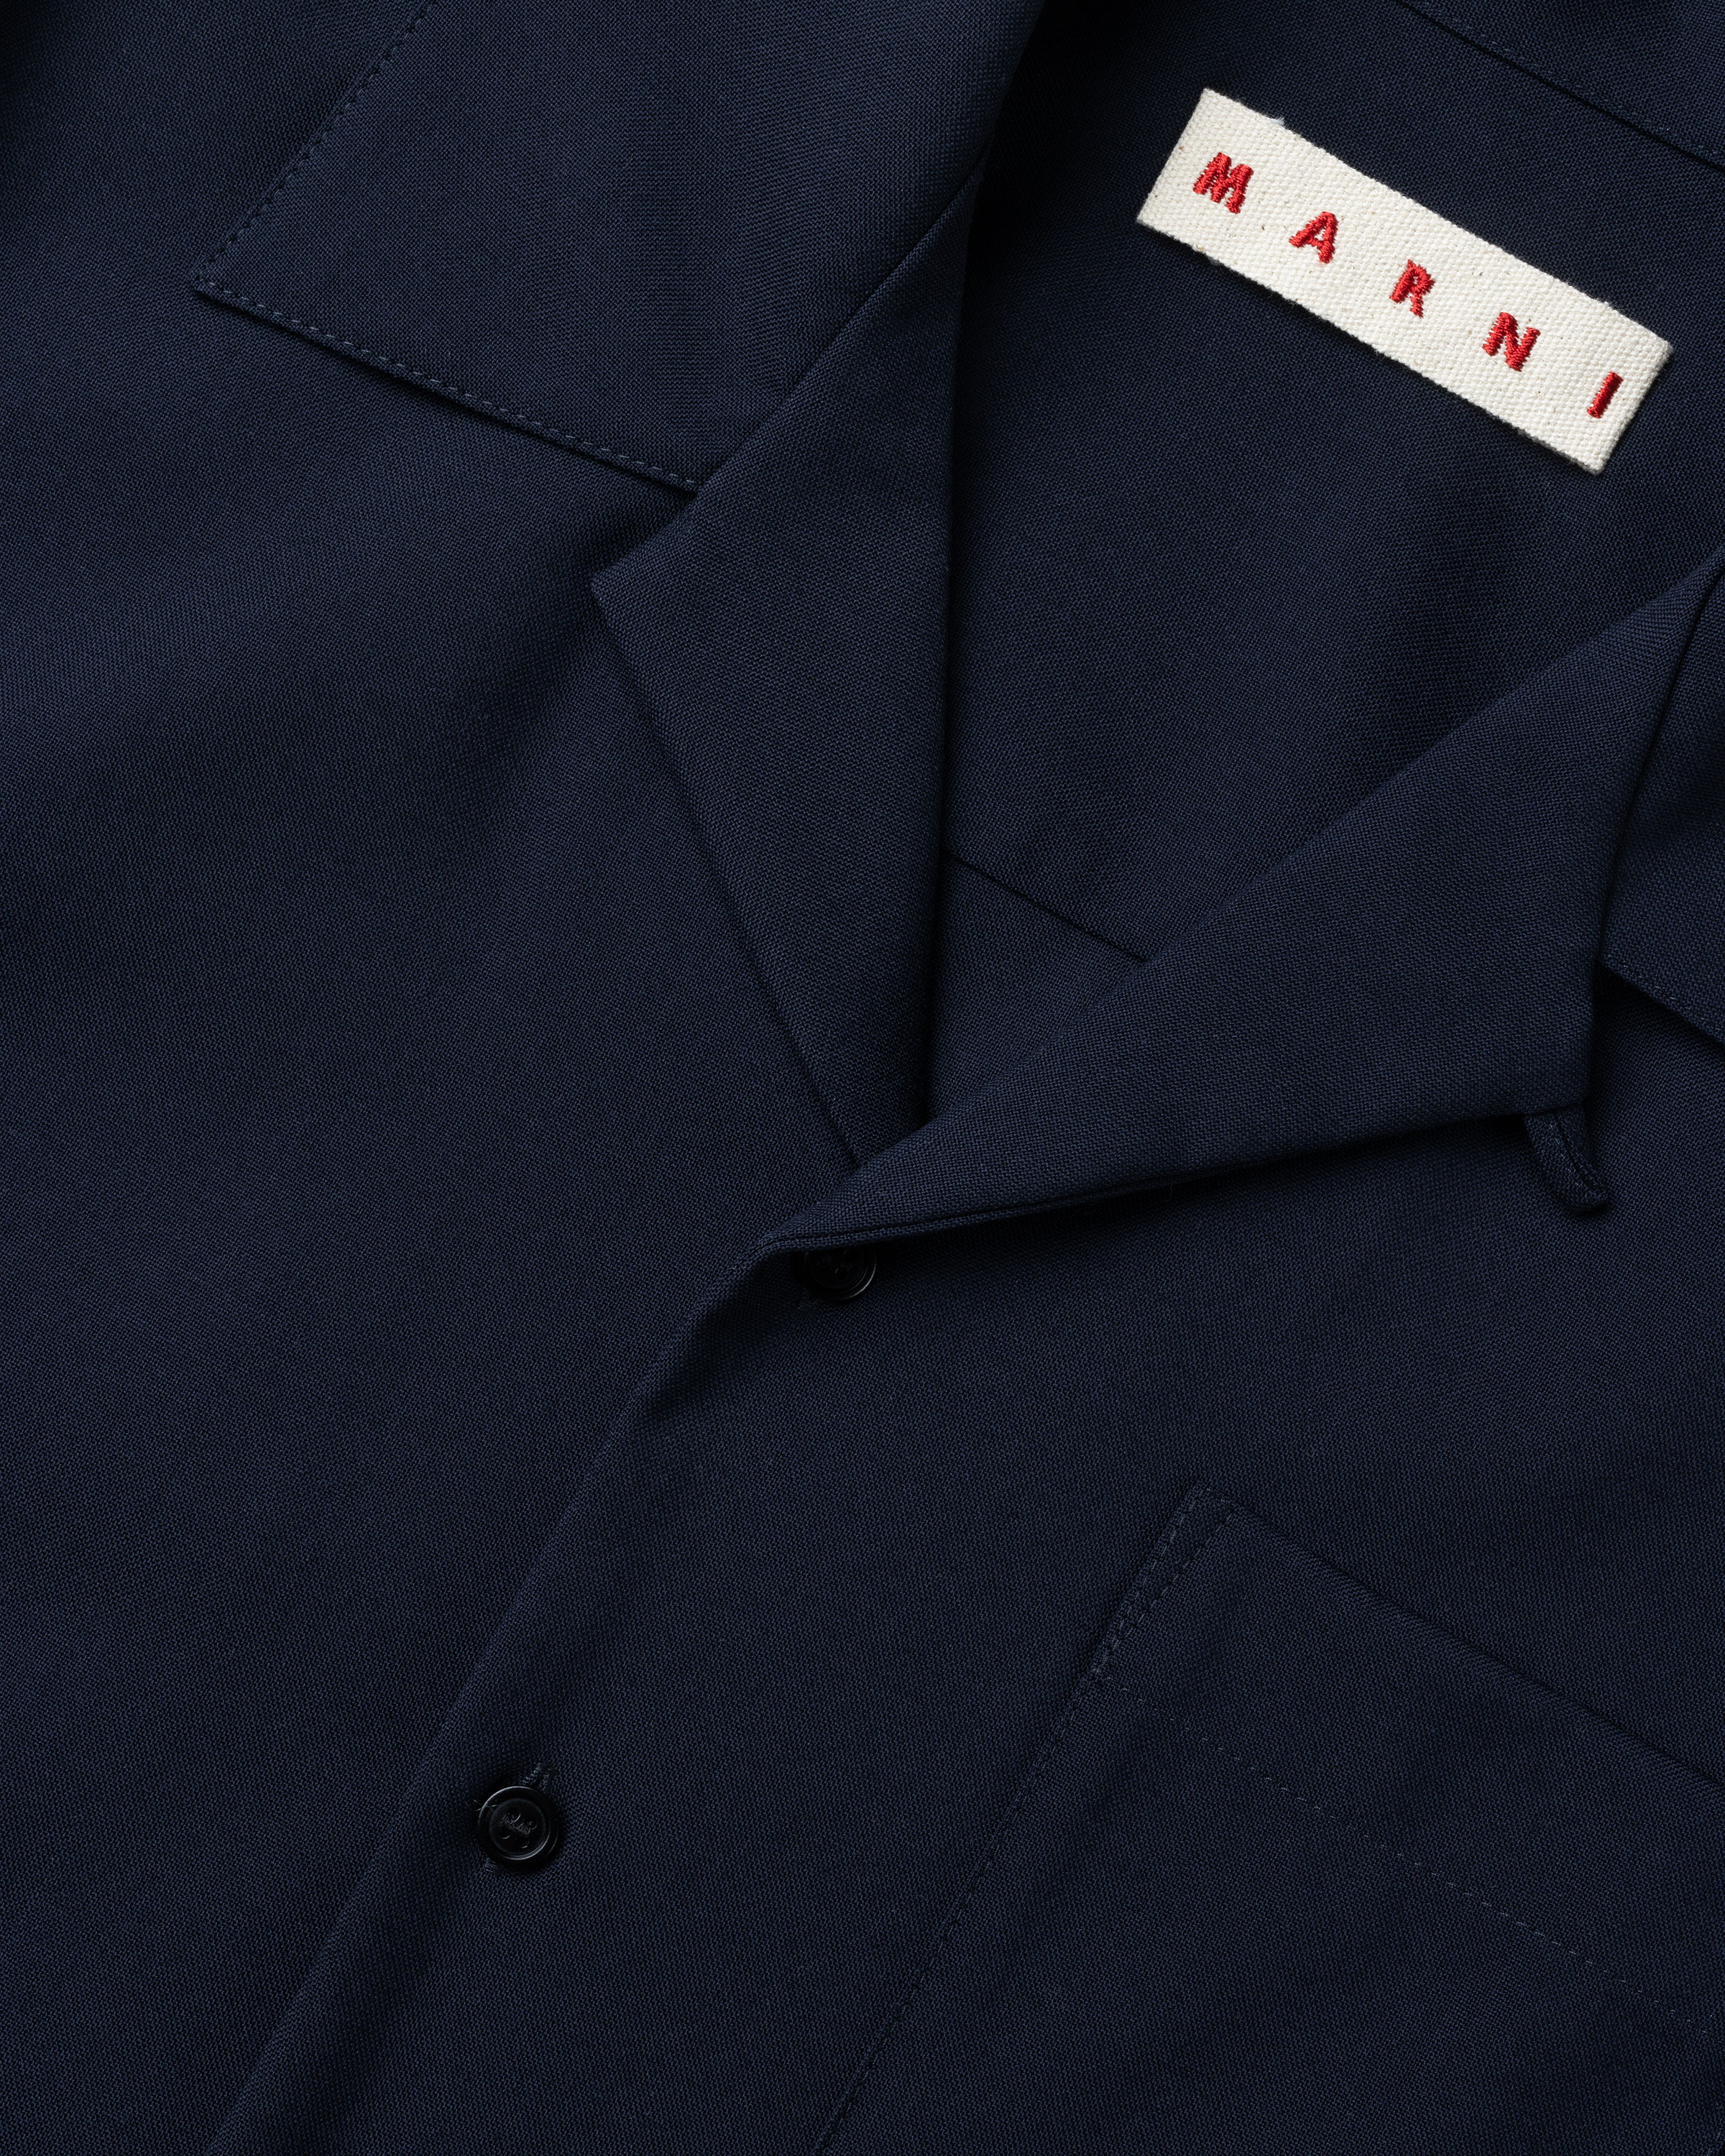 Marni - Bowling Shirt Navy - Clothing - Blue - Image 6